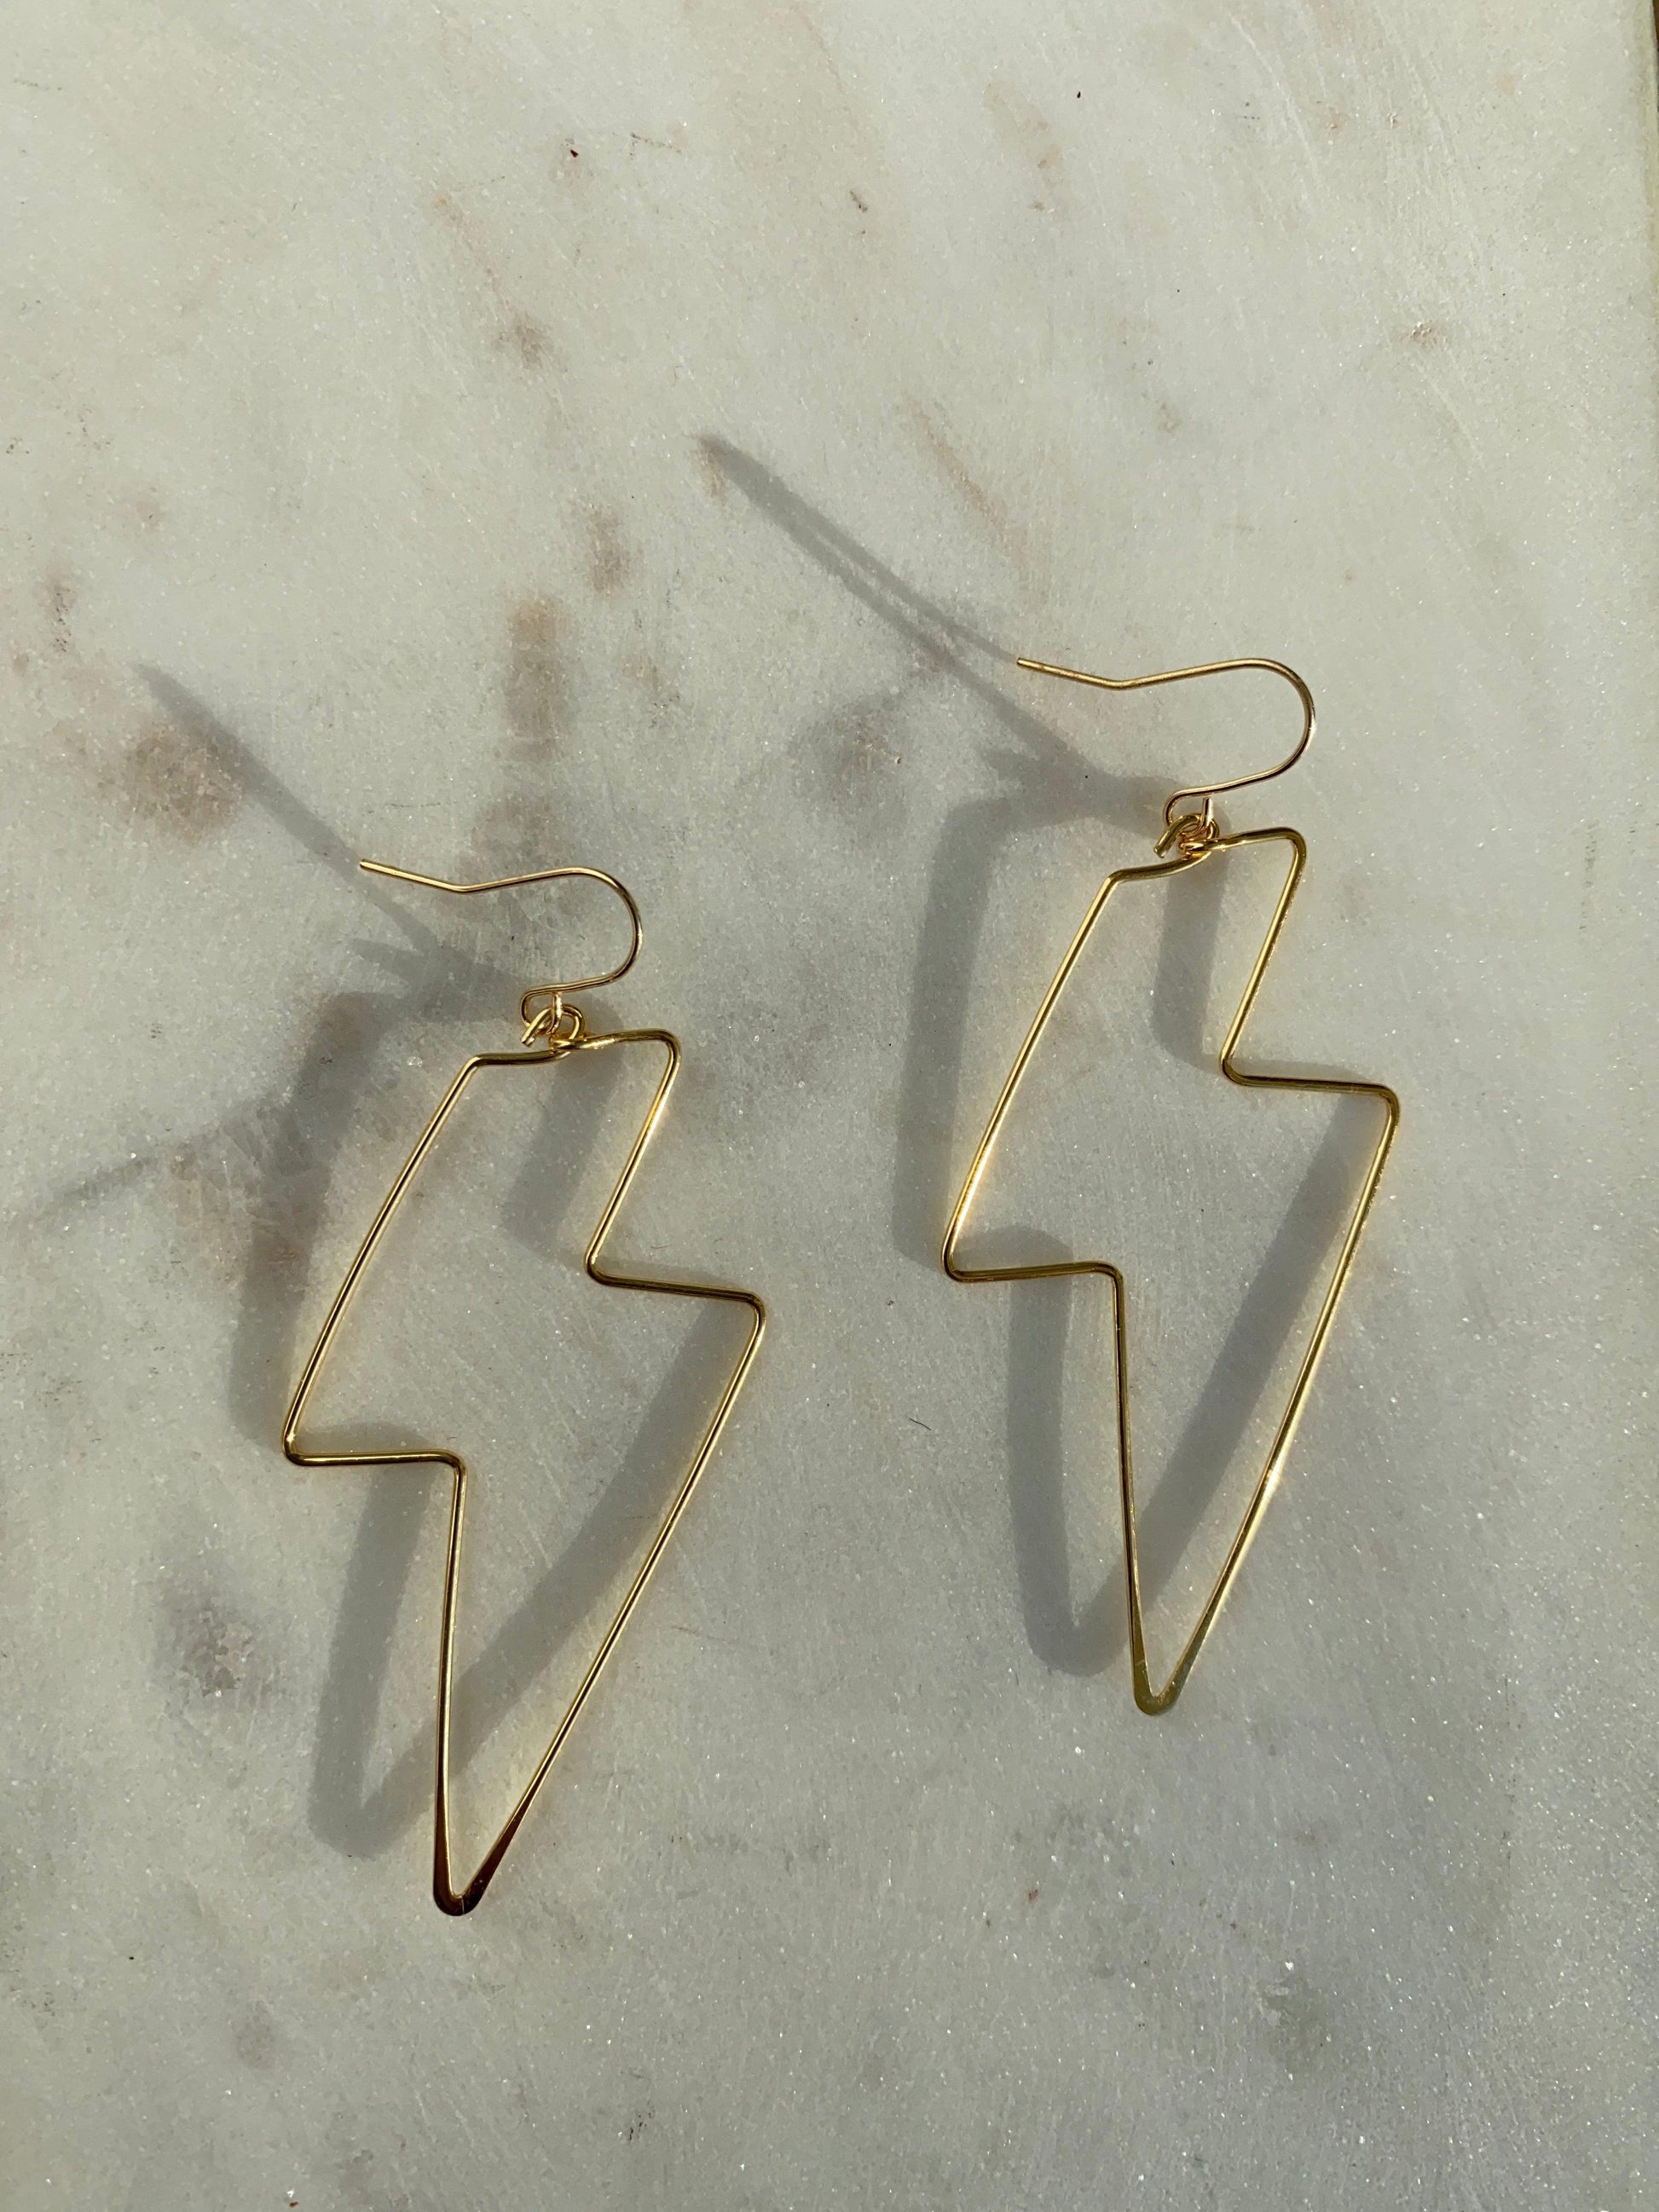 Lightning Bolt Dangle Earrings - Kybalion Jewellery